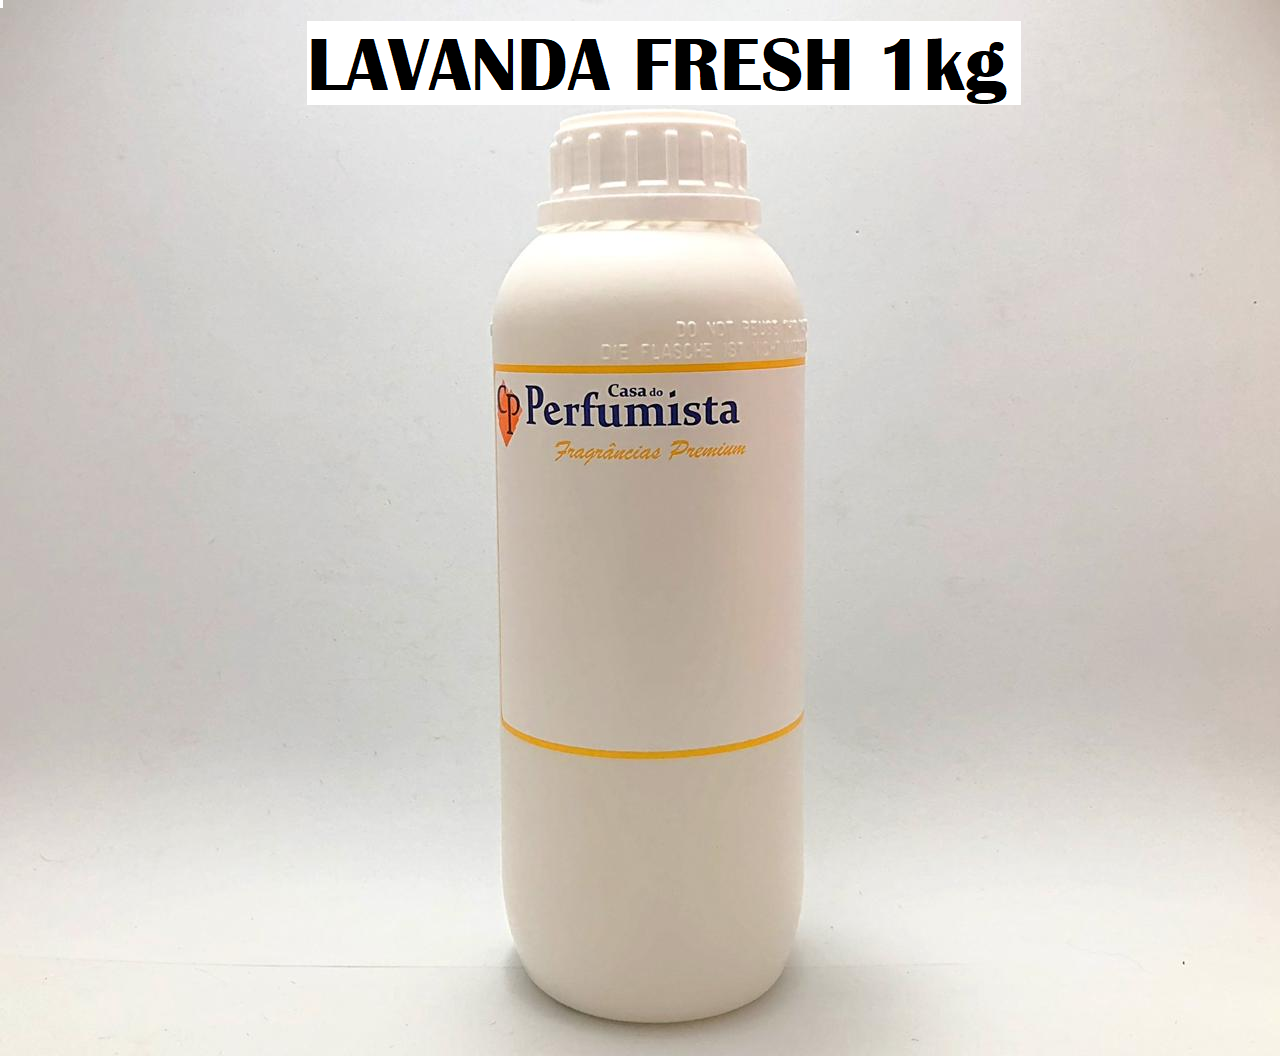 LAVANDA FRESH - 1kg